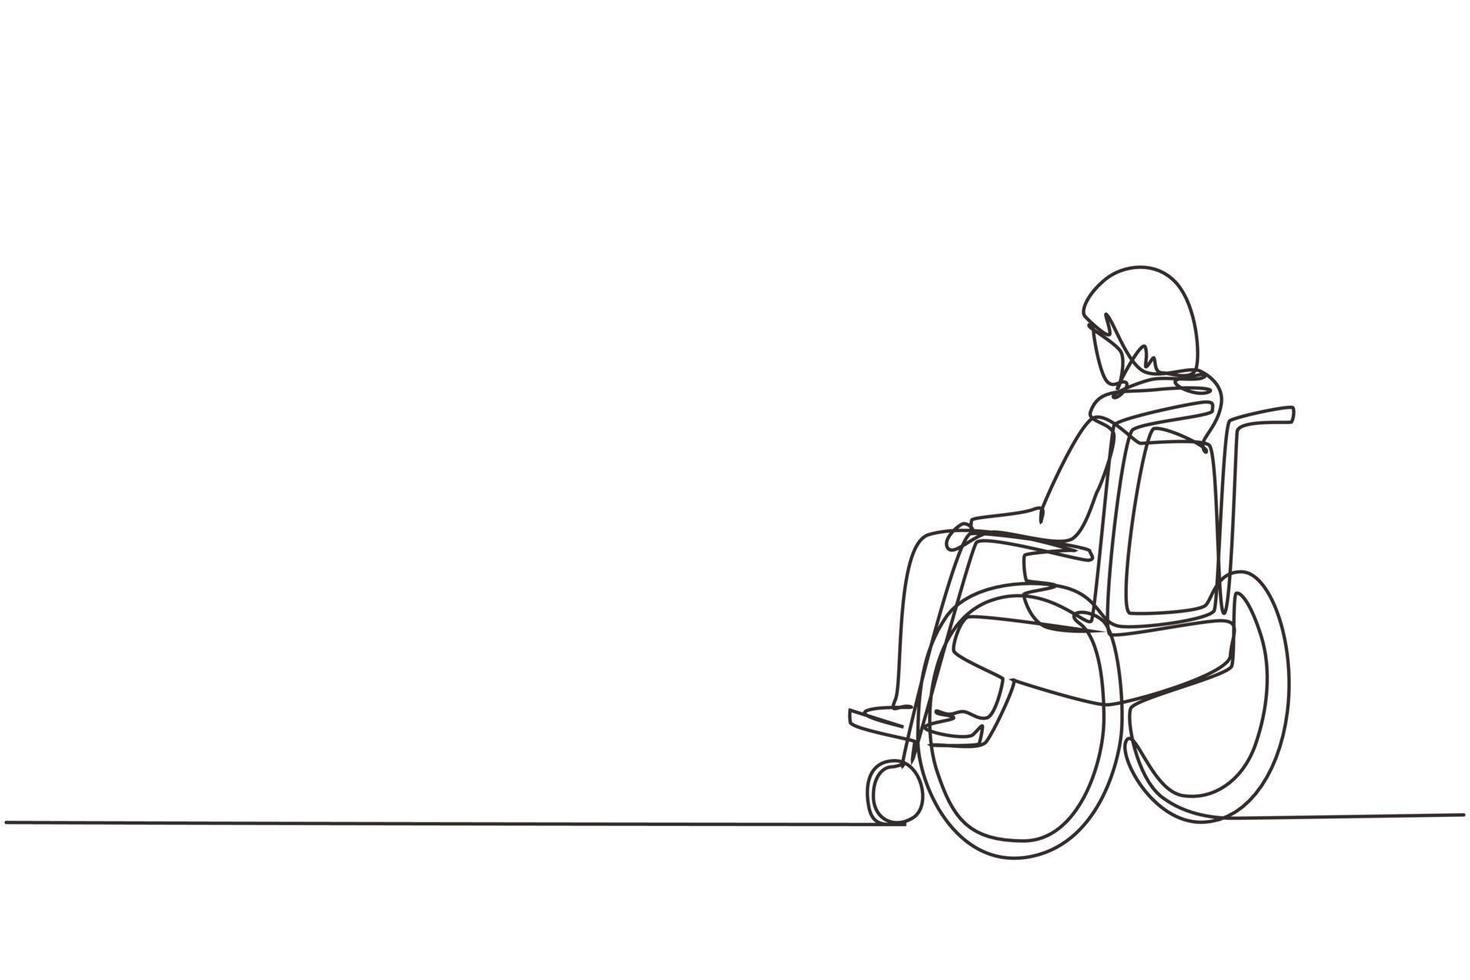 enkele één lijntekening achterkant van eenzame oude Arabische vrouw zittend op een rolstoel, kijkend naar verre droge herfstbladeren. eenzaam, verlaten, verlaten, eenzaam. ononderbroken lijn vector ontwerp illustratie